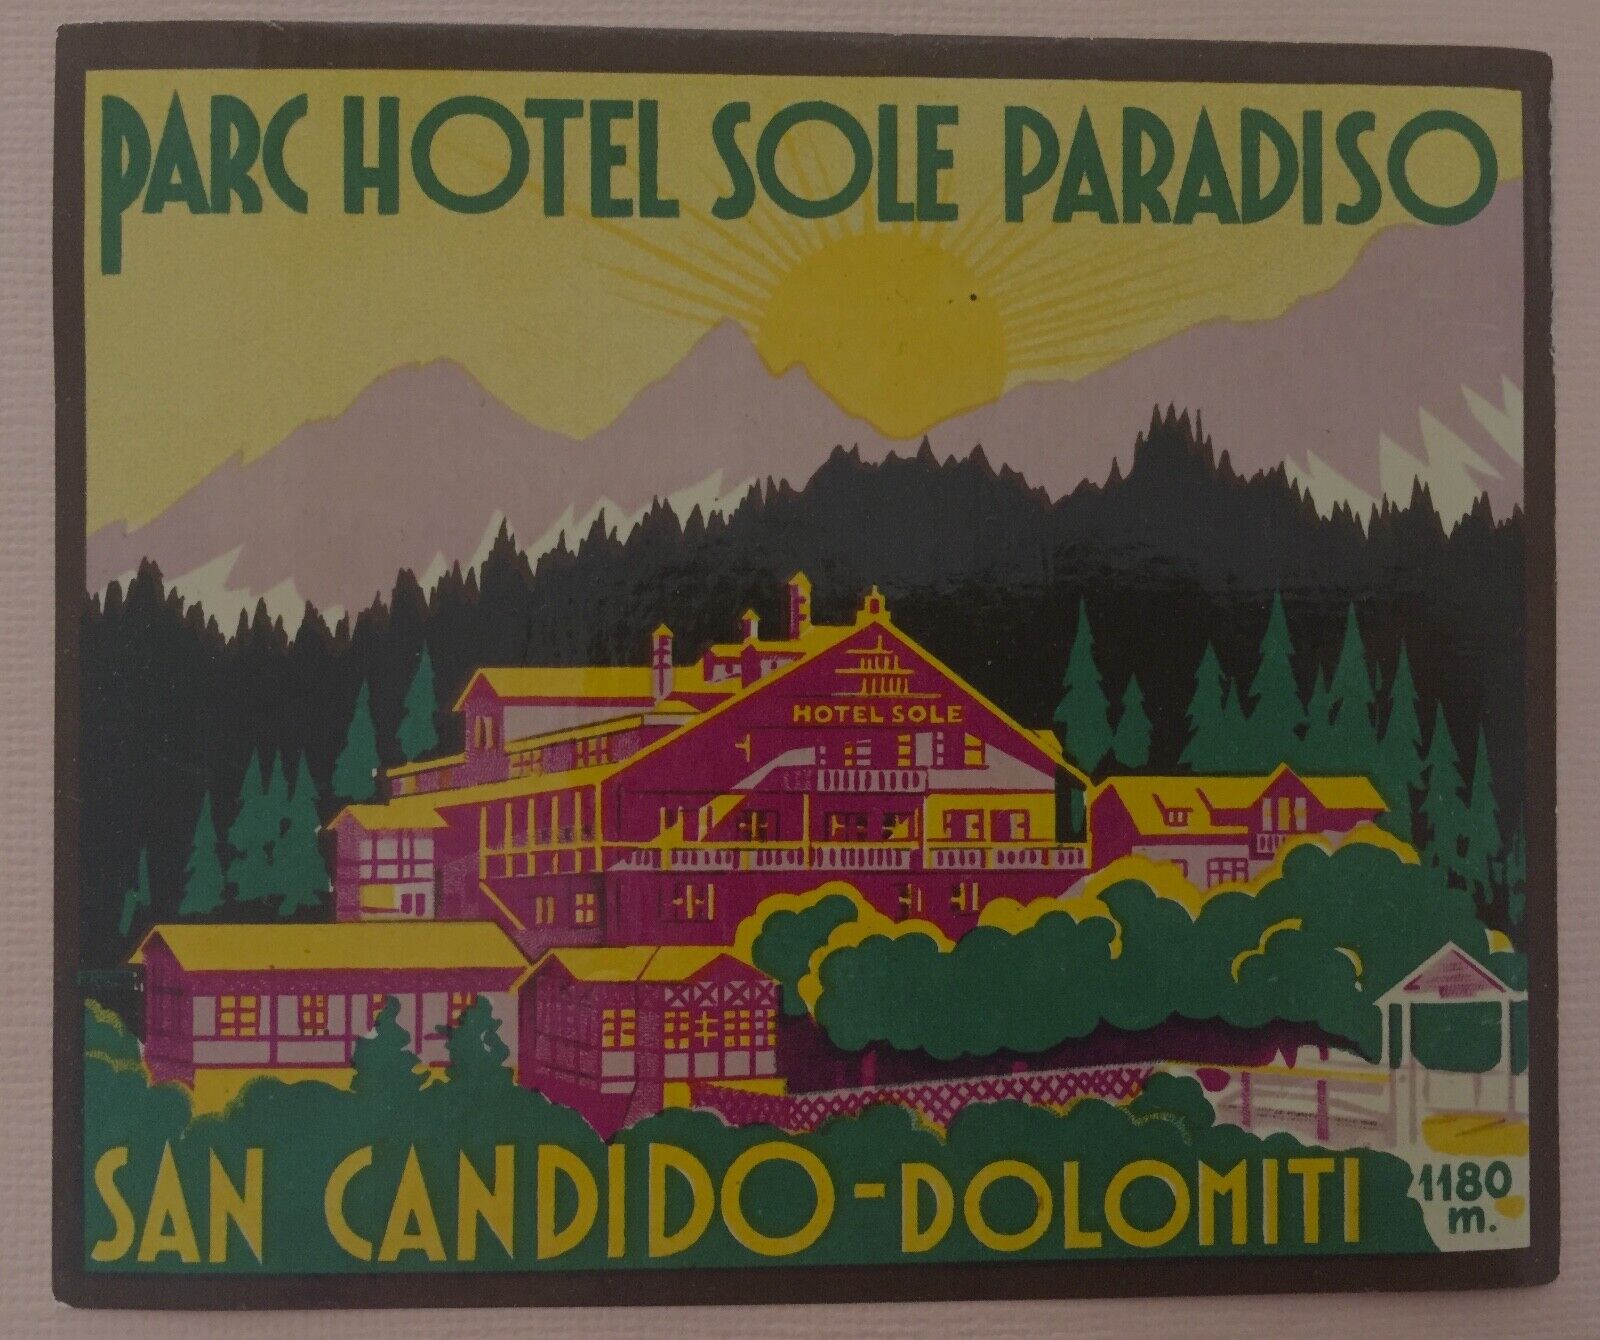 Luggage Label Parc Hotel Sole Paradiso, San Candido-Dolomiti / Italy